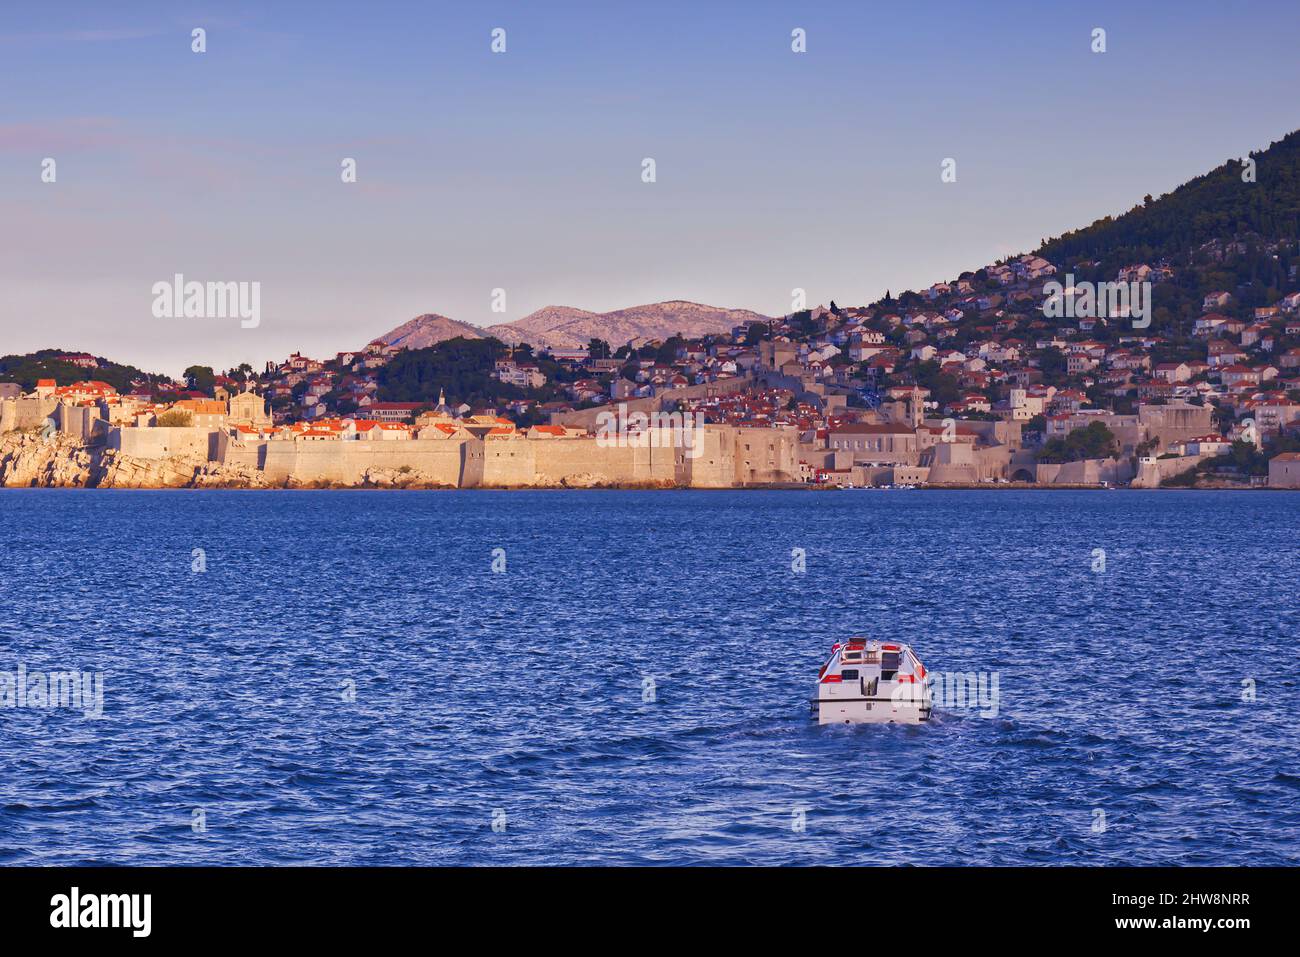 Dubrovnik, Croazia - arrivando via mare - una piccola barca si avvicina alla città, con le mura della città e montagne lontane in vista Foto Stock